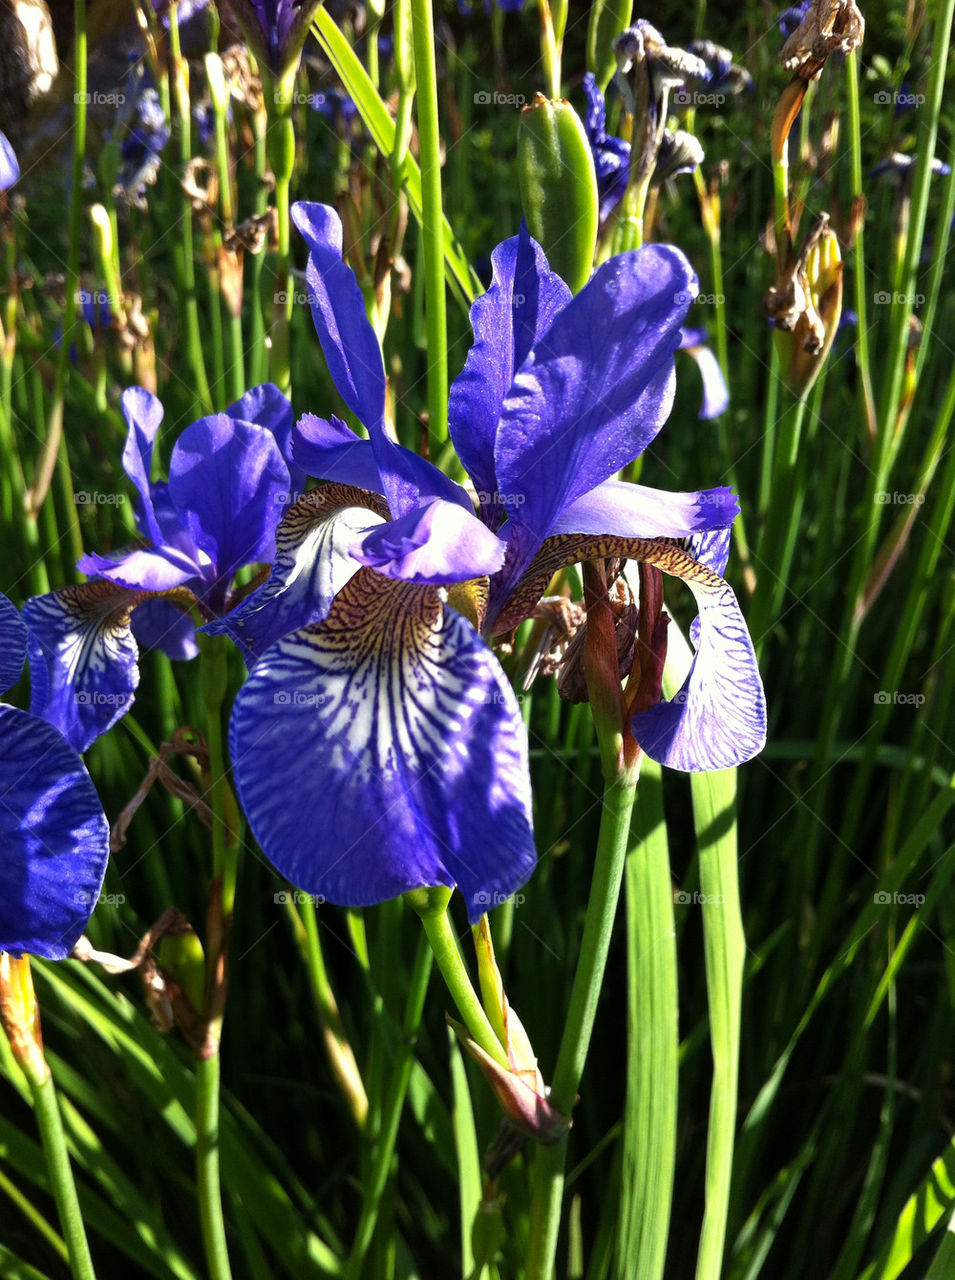 flower blue blomma blå by ingelad